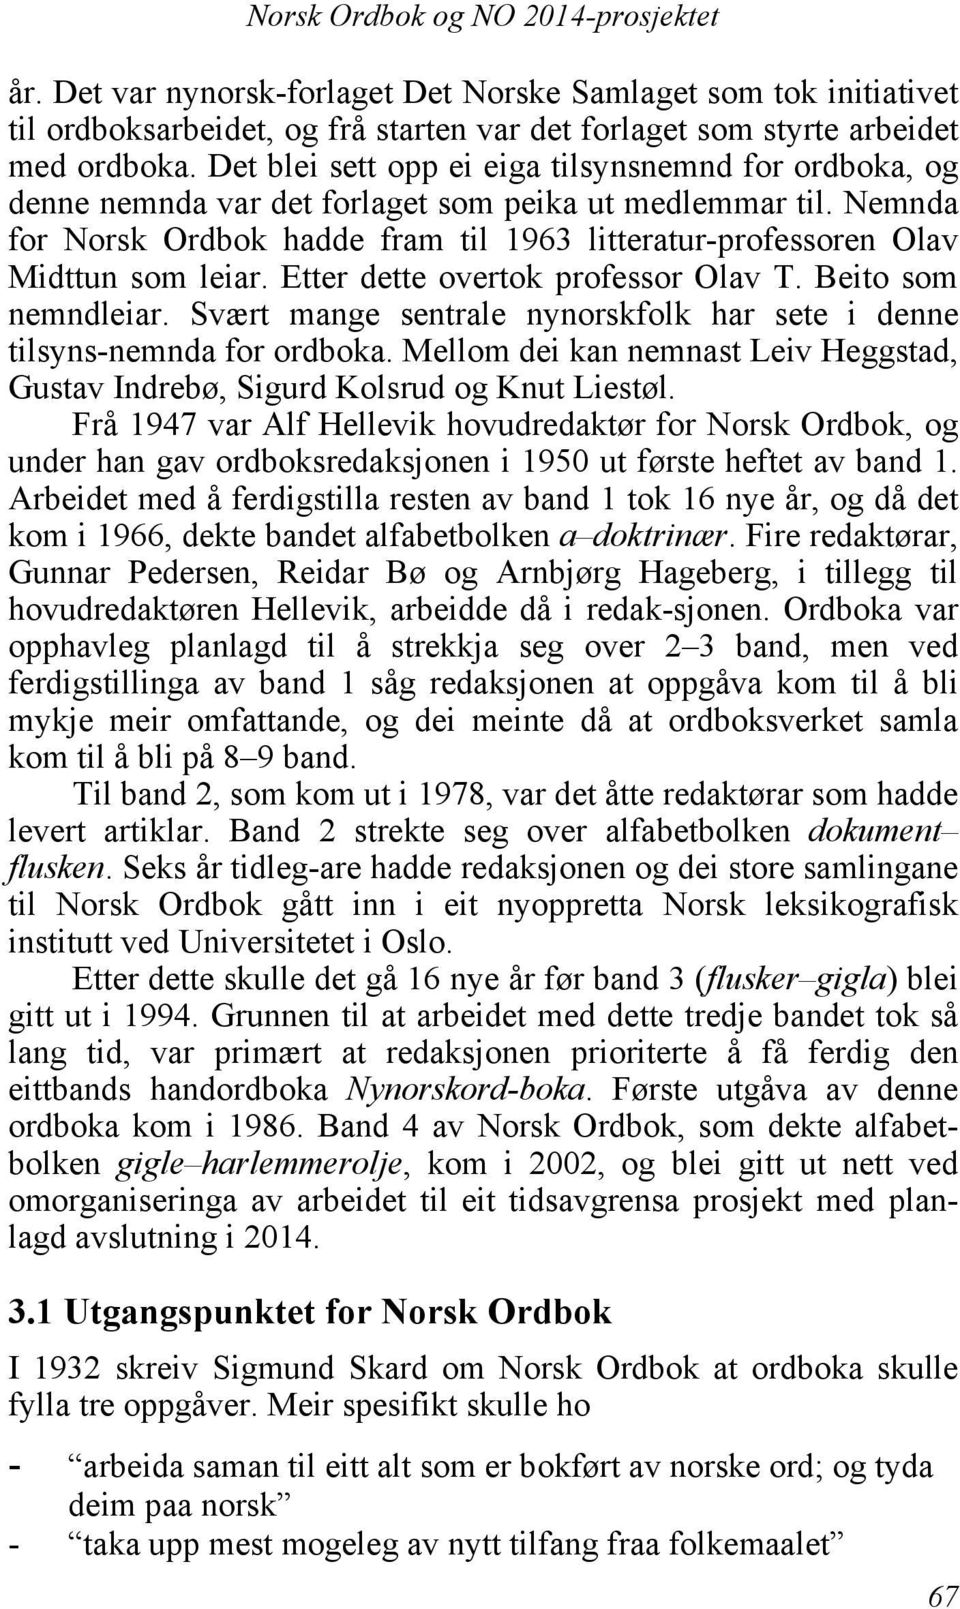 Nemnda for Norsk Ordbok hadde fram til 1963 litteratur-professoren Olav Midttun som leiar. Etter dette overtok professor Olav T. Beito som nemndleiar.